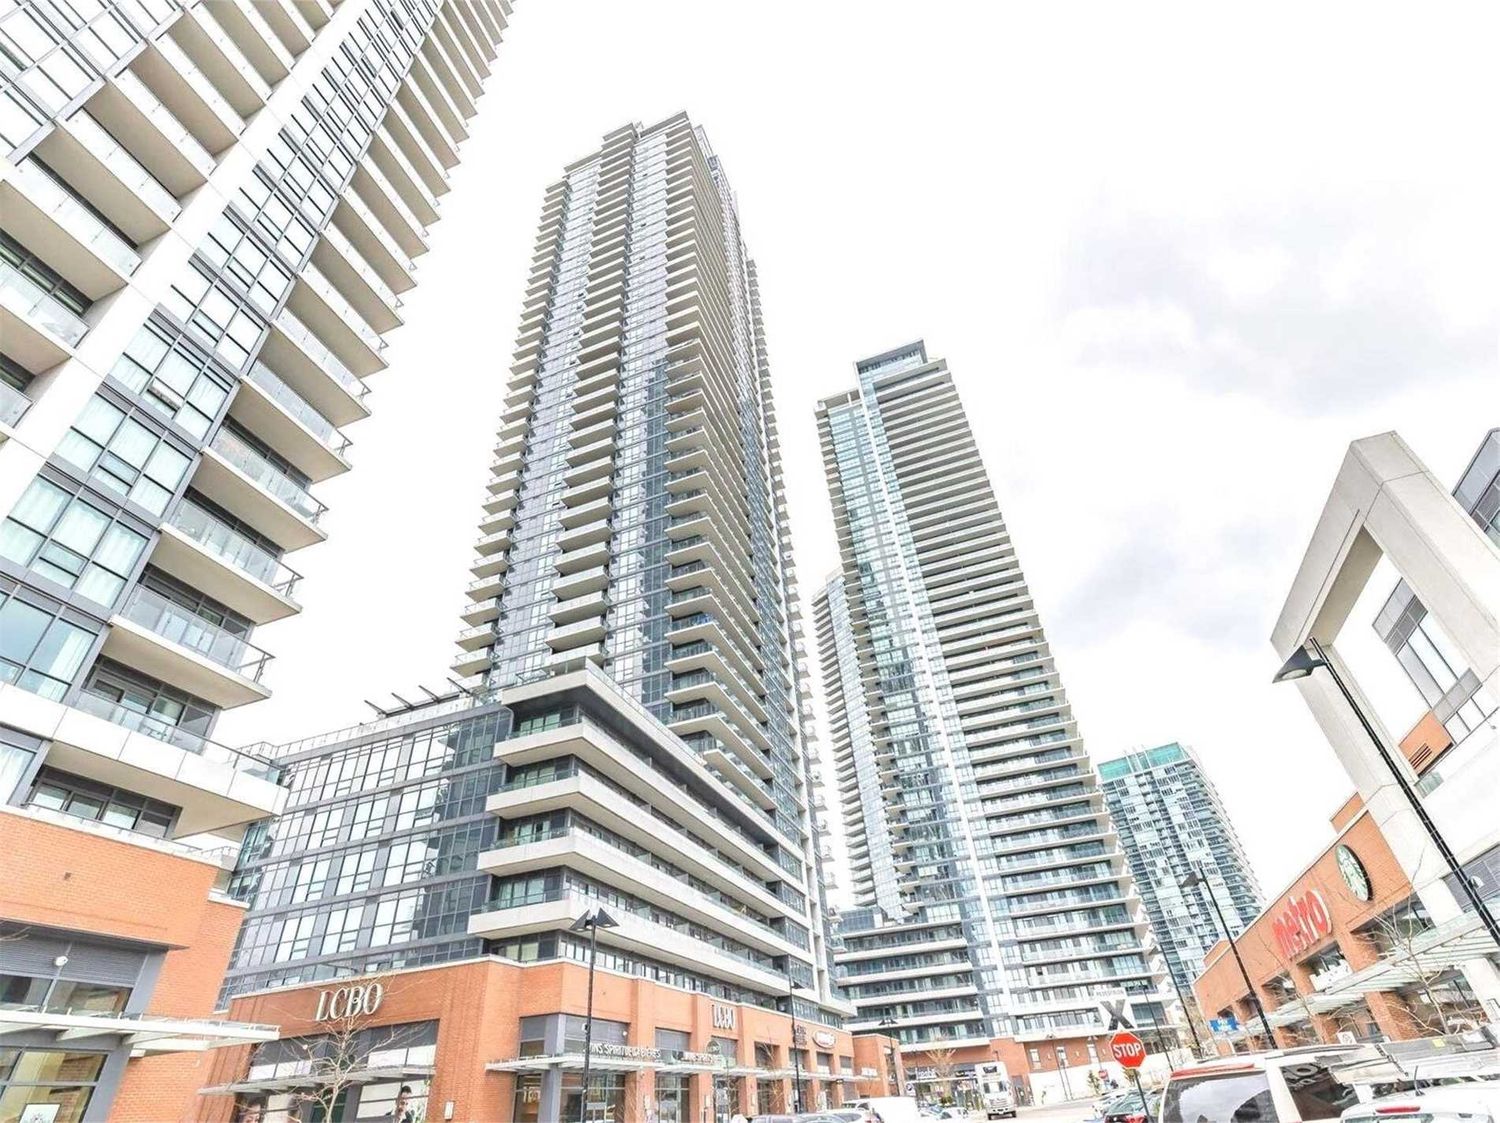 2220 Lake Shore Boulevard W. Westlake Phase I Condos is located in  Etobicoke, Toronto - image #2 of 3